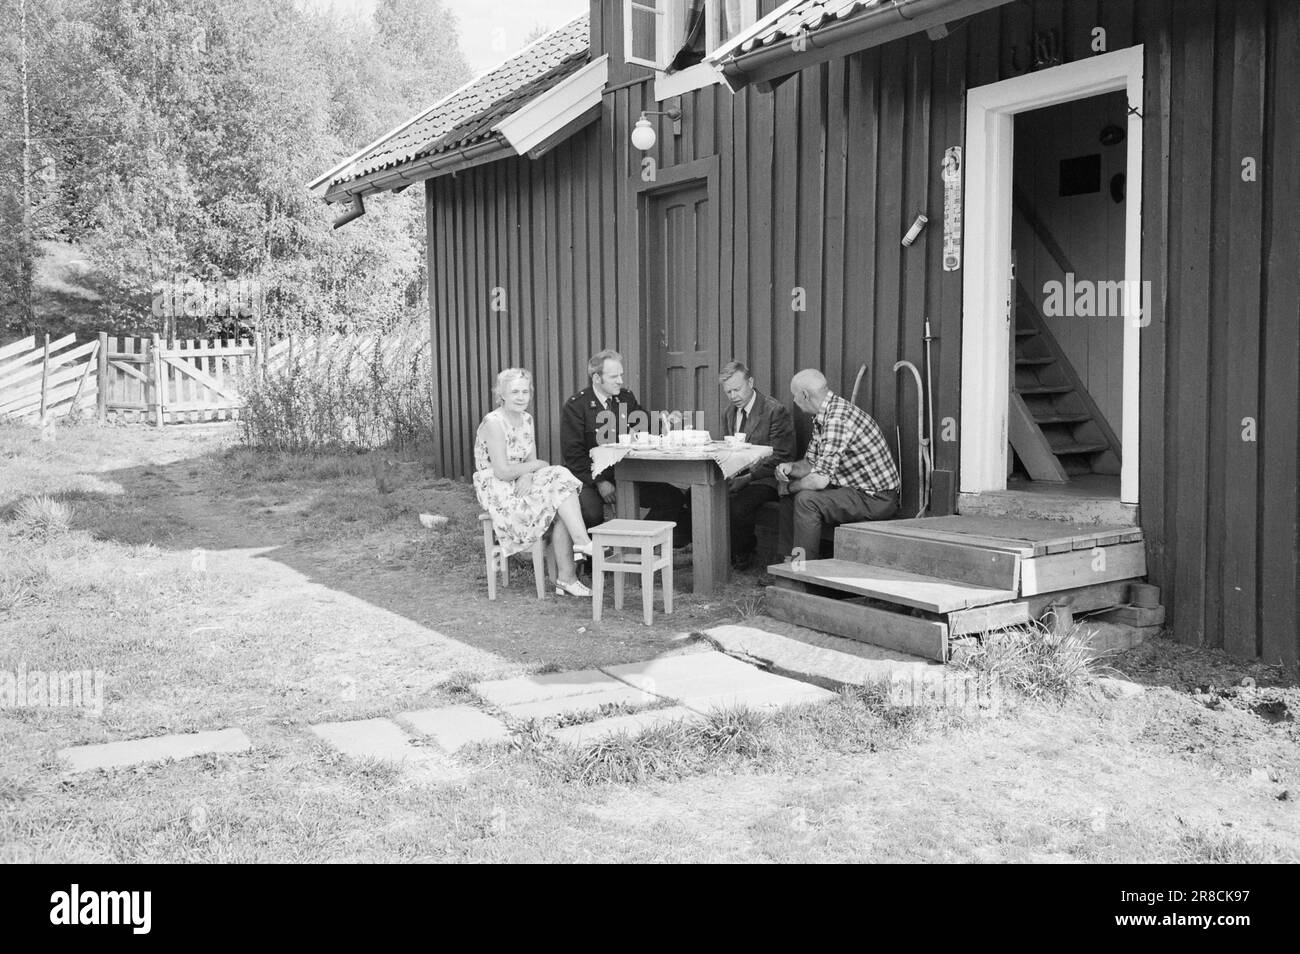 Attuale 22 - 2 - 1974: DUS con il PoliceLa polizia distrettuale è uno strano fenomeno che agisce come una sorta di zona cuscinetto tra il poliziotto ordinario e il ragazzo in strada. Lo scopo principale è quello di prevenire la criminalità. La corrente è con gli ufficiali Helge Løhren e Lars Stubstad. Visita di Maria e Reidar Ødegården a Østmarka. Entrambi sono stati attivamente coinvolti nel lavoro con i giovani del distretto. Foto: Ivar Aaserud / Aktuell / NTB ***FOTO NON ELABORATA*** Foto Stock